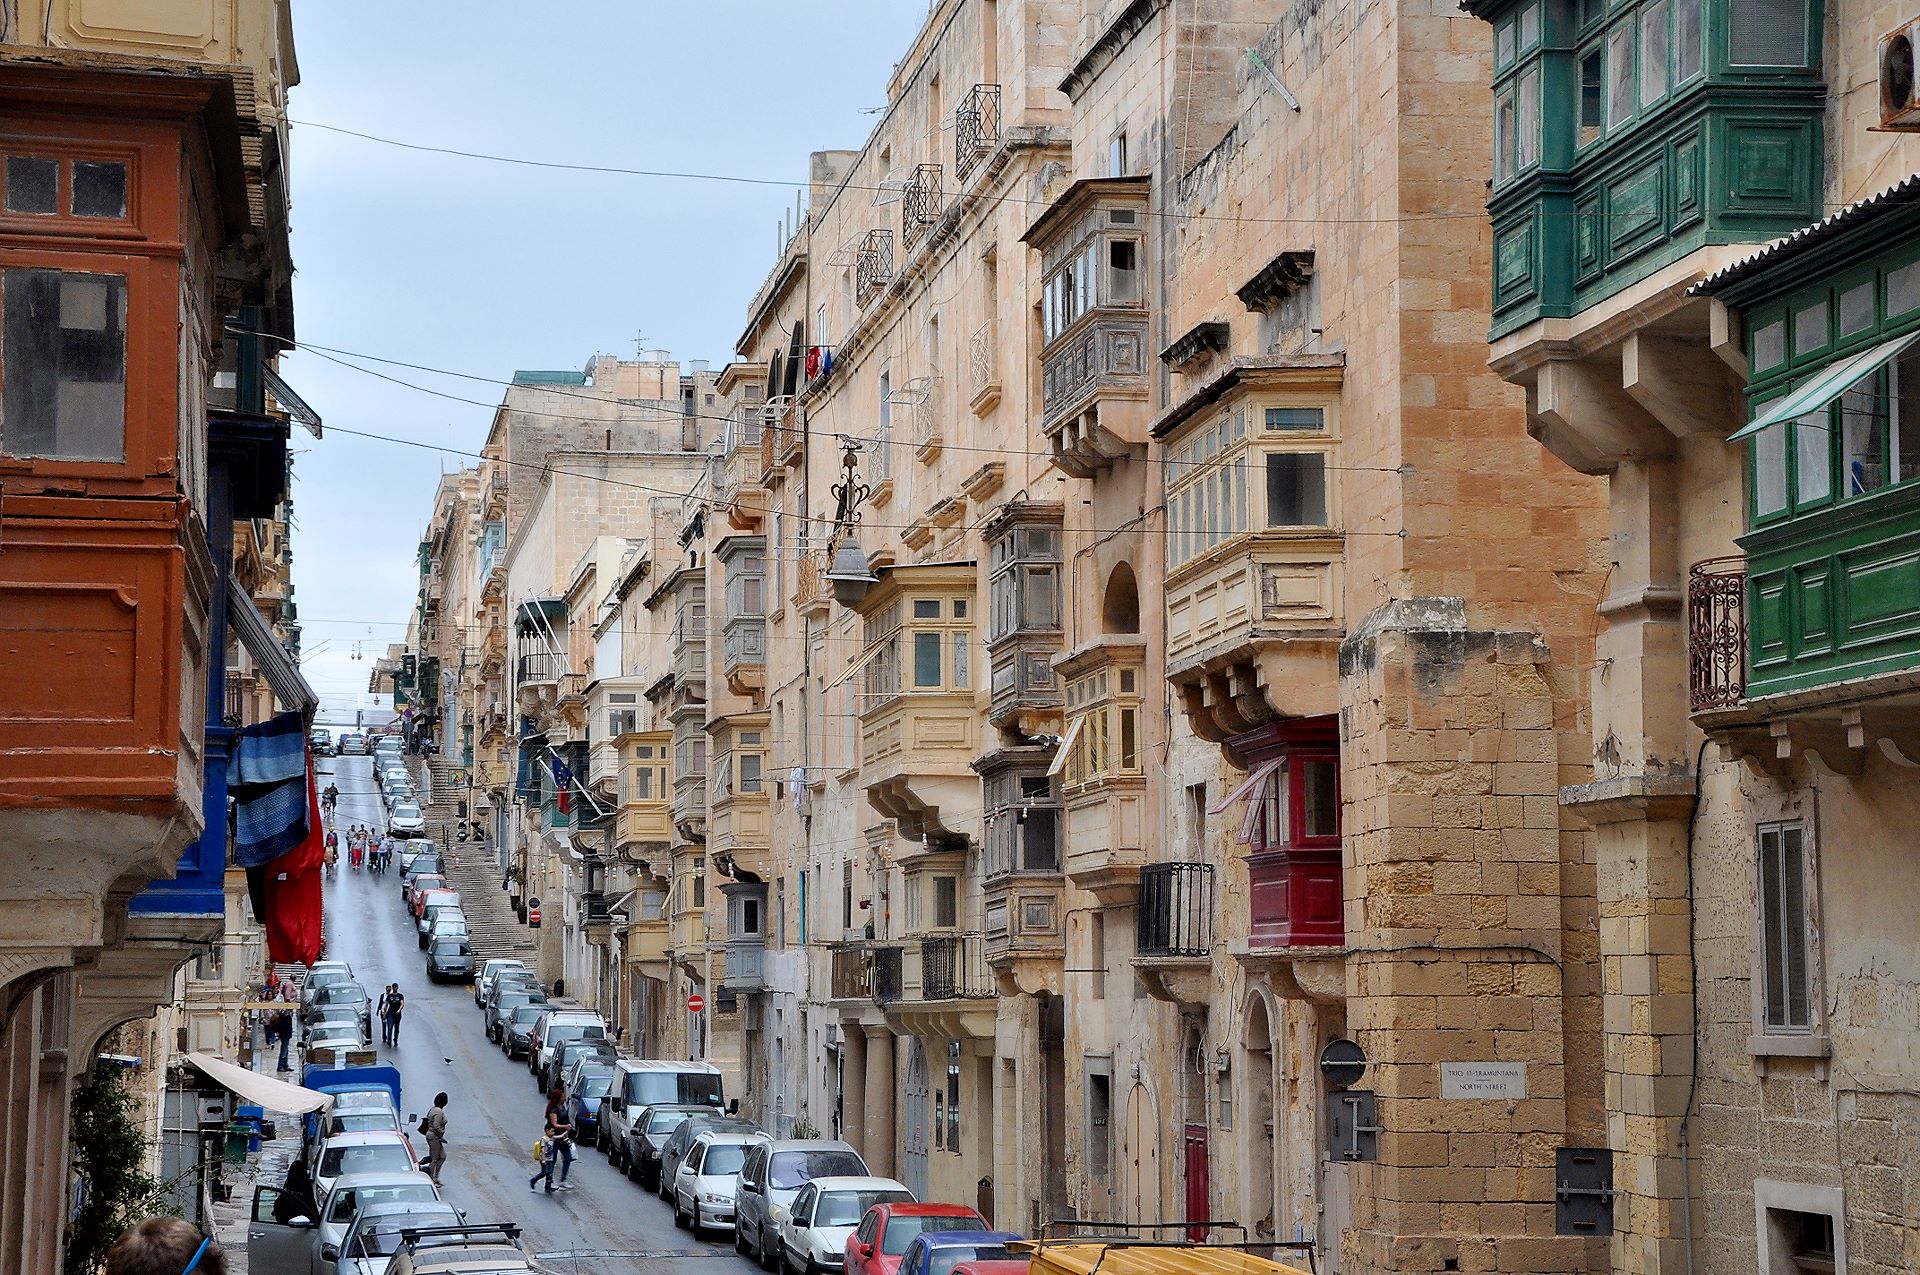 Vallettatypische Straße